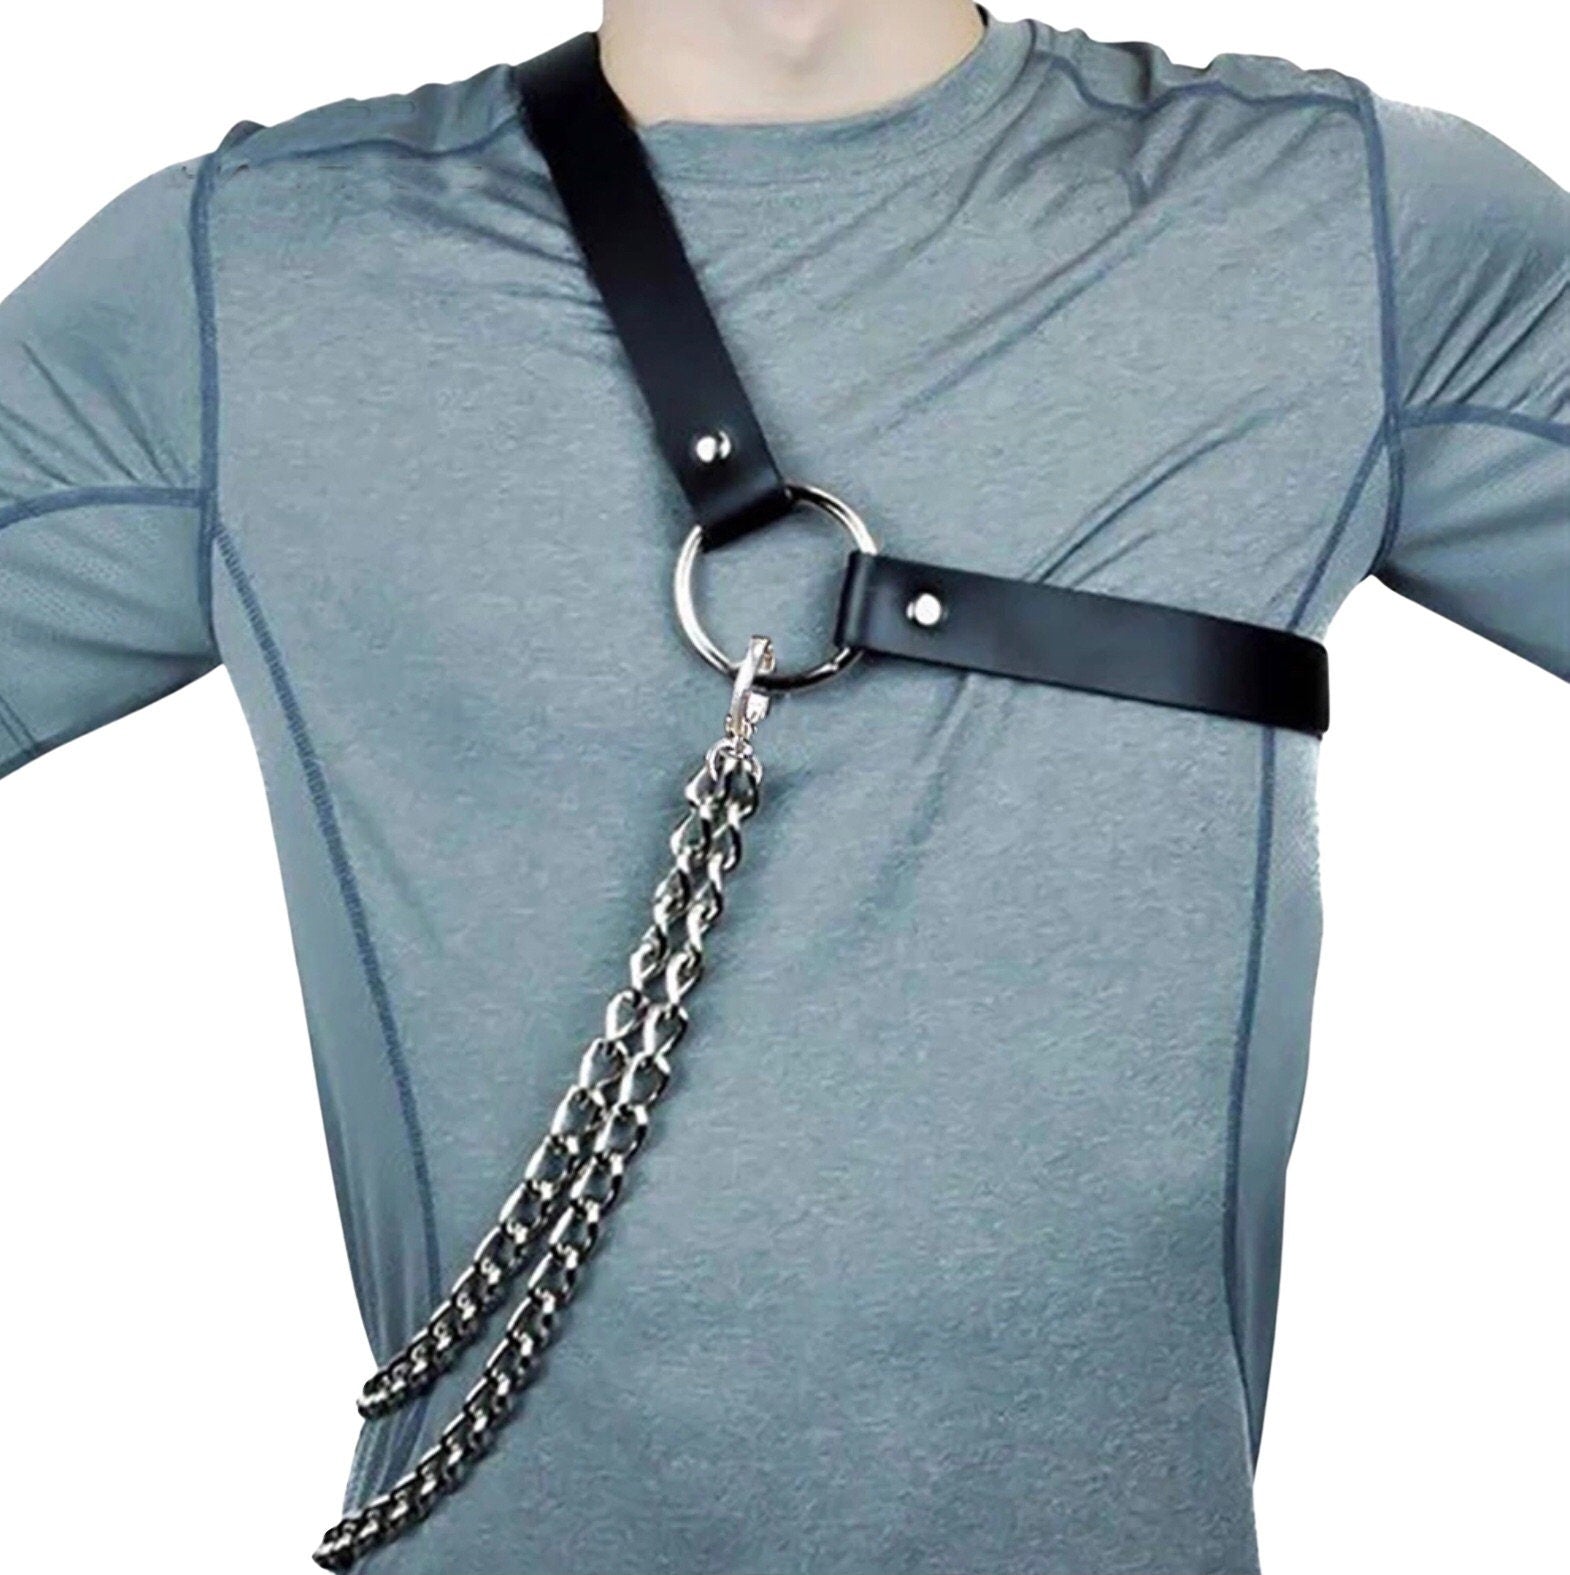 Fetish Harness Belts Men Adjustable Gothic Faux Leather Tops Body Chain Bondage Harness Straps Punk Rave Costumes - NansUniqueShop4Men